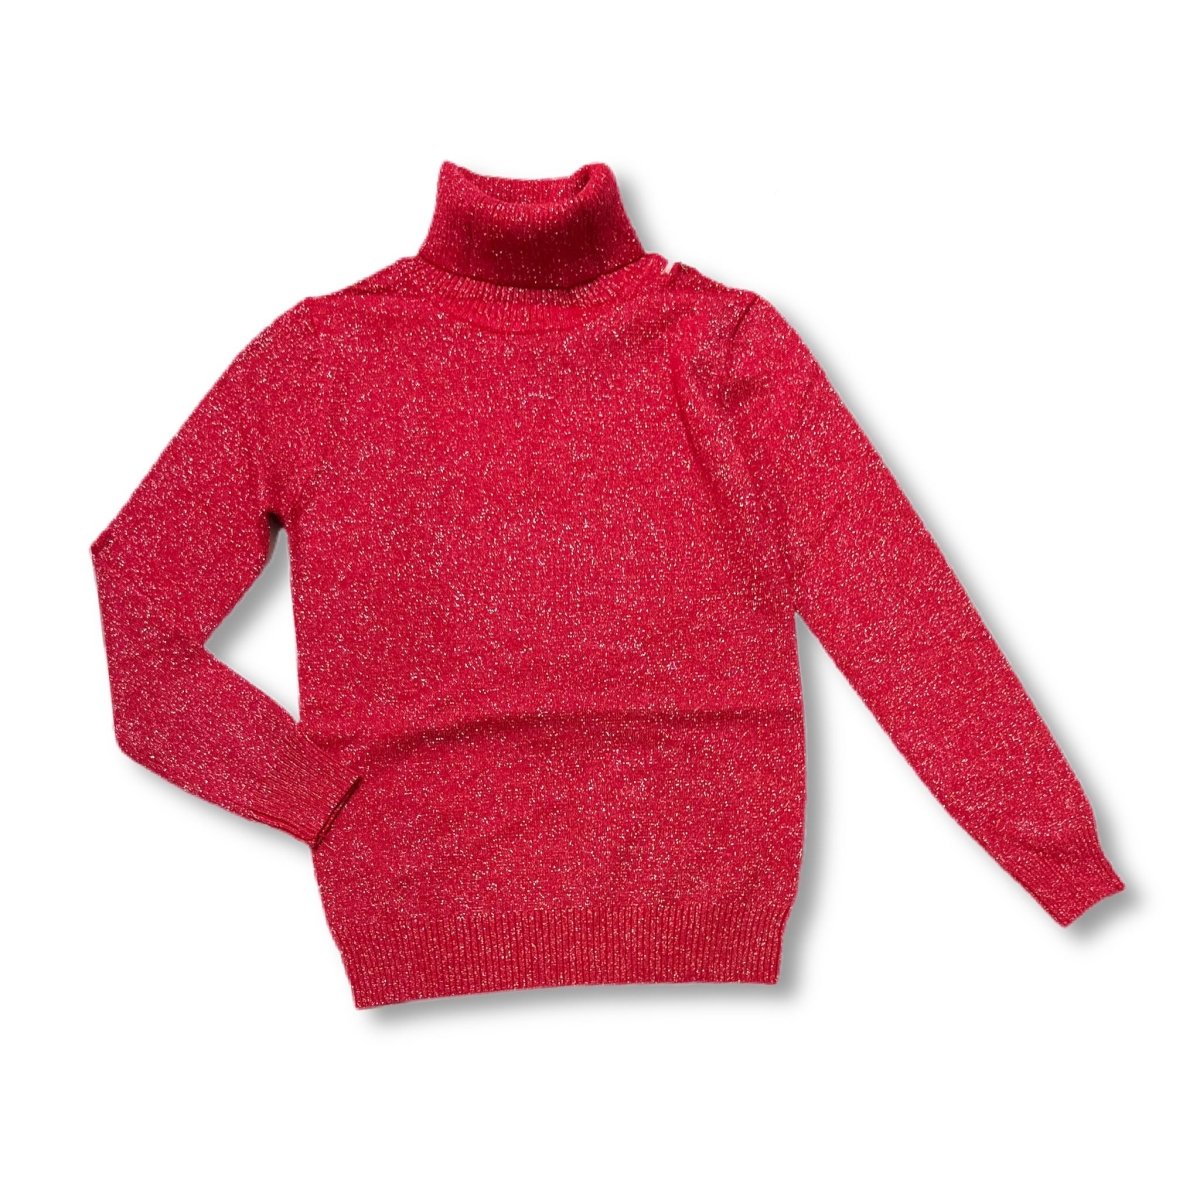 Maglione Glitter collo alto - Mstore016 - maglione bimba - Pink Baby